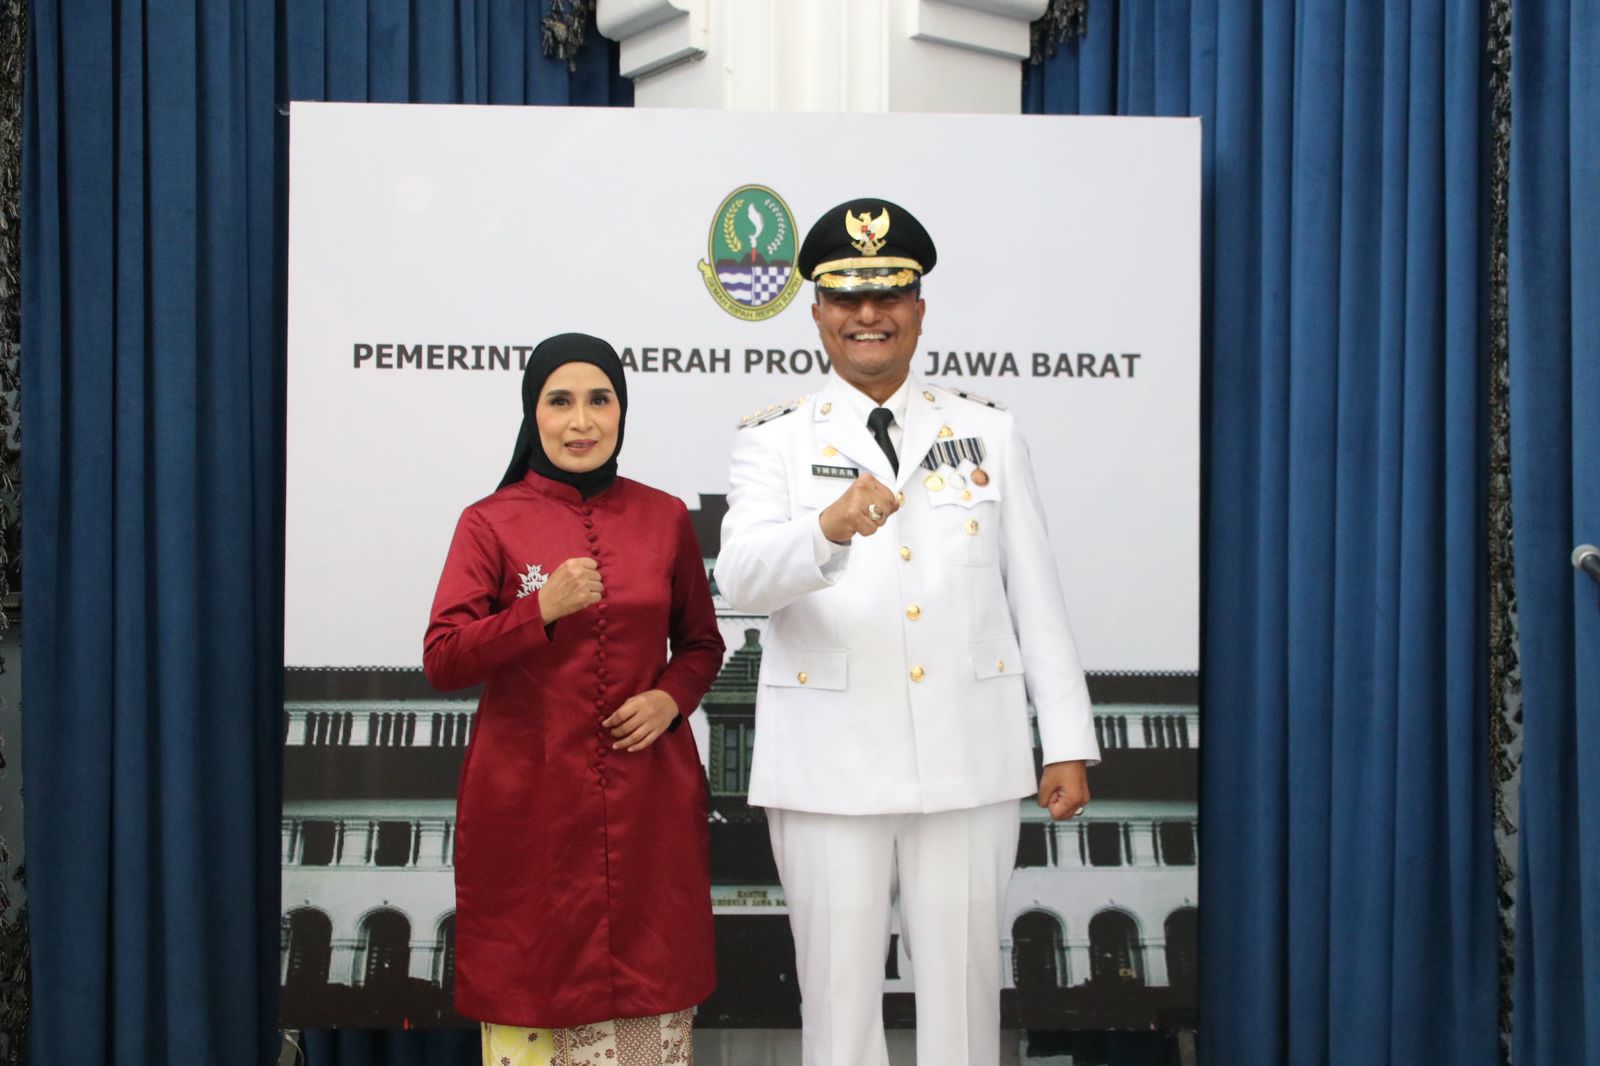 Penjabat Bupati Subang Imran bersama dengan istri usai dilantik di Gedung Sate, Selasa sore (19/12).